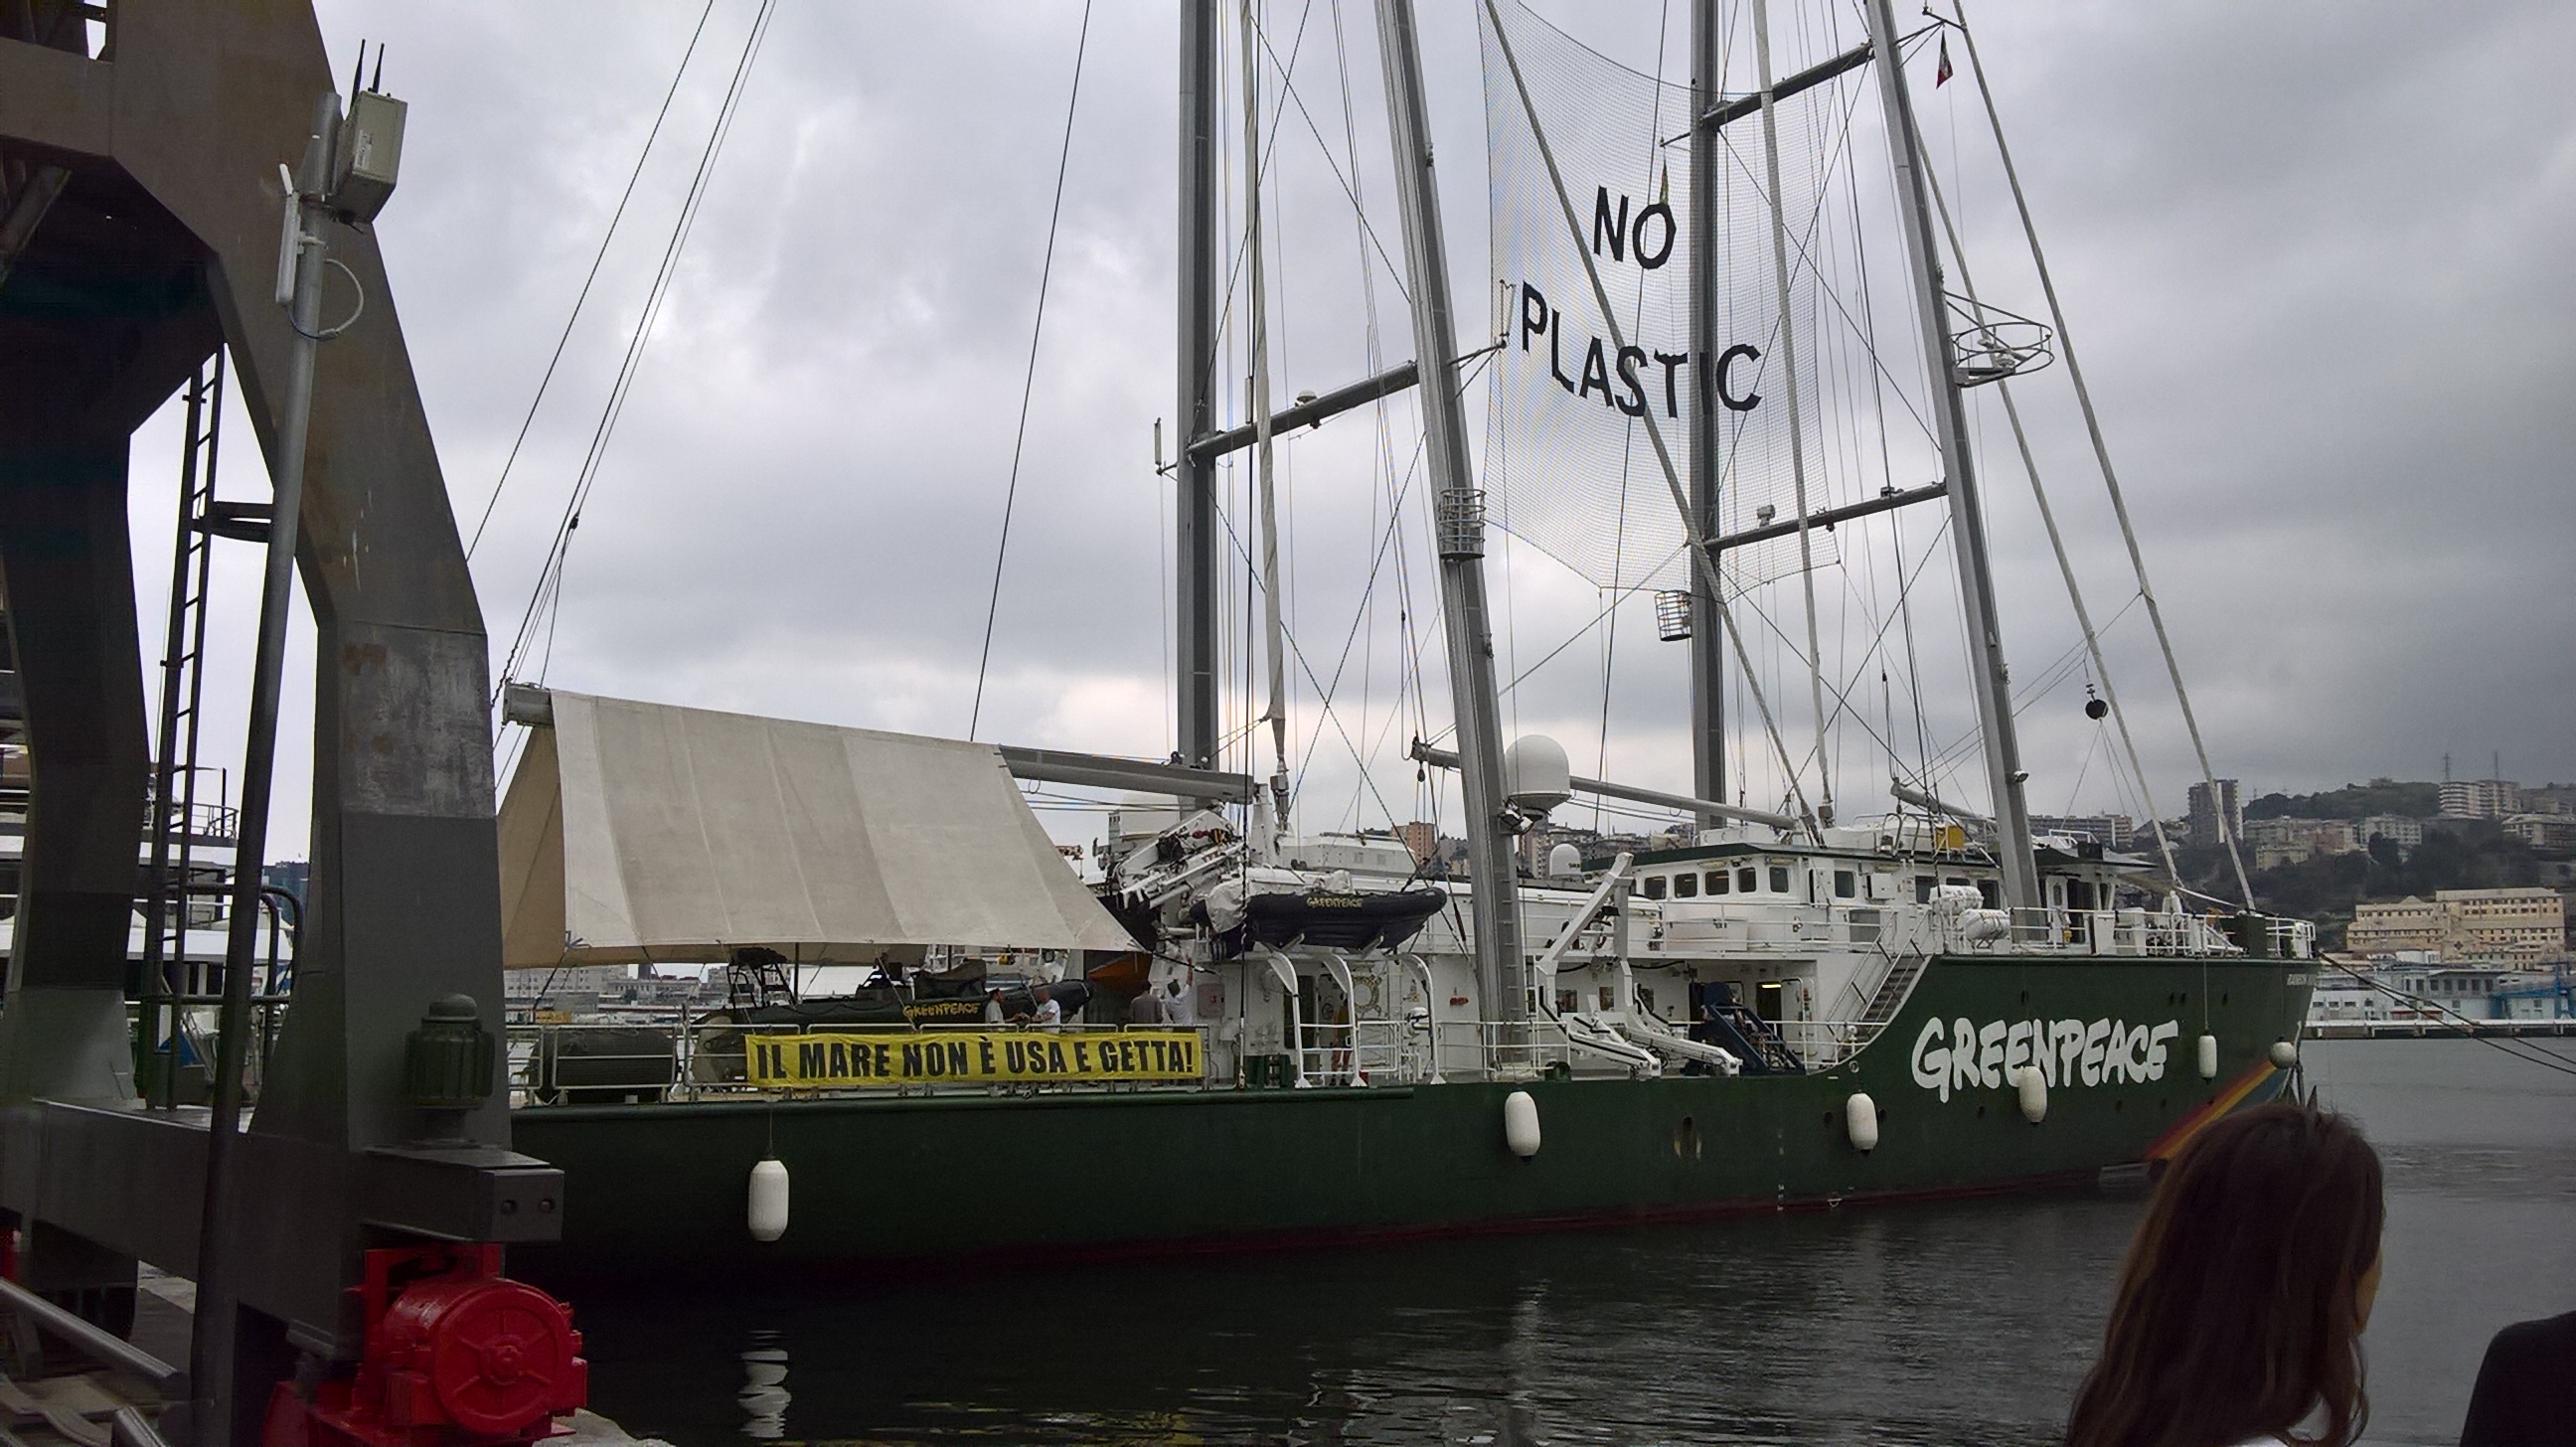 SZN partecipa  al tour di Greenpeace nel Mediterraneo “MENO PLASTICA, PIÙ MEDITERRANEO” A bordo della Rainbow Warrior da venerdì 30 giugno a sabato 1 luglio  Pozzuoli – Molo Caligoliano